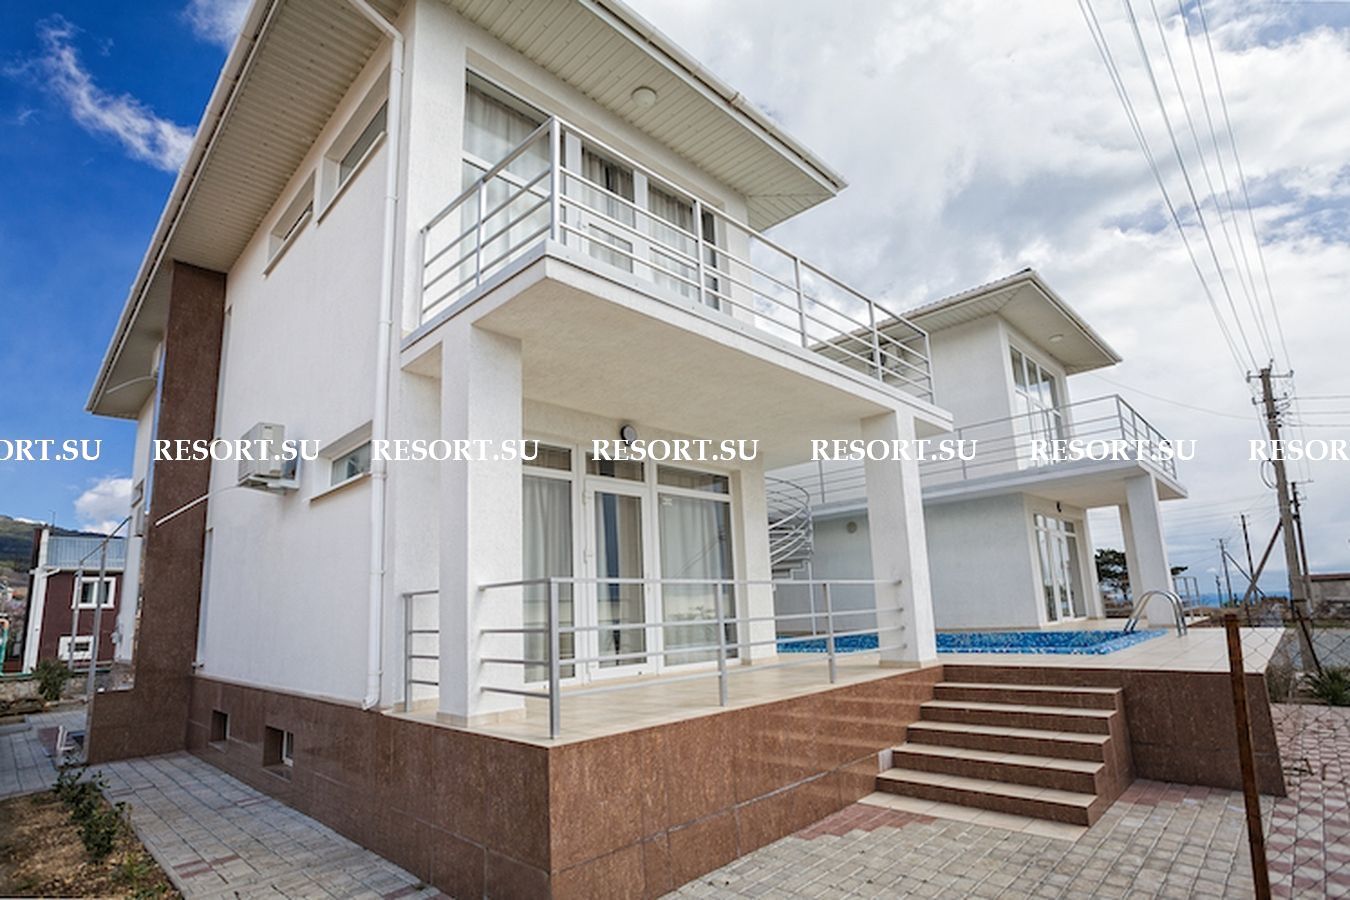  Продается двухэтажный дом в Кореизе 